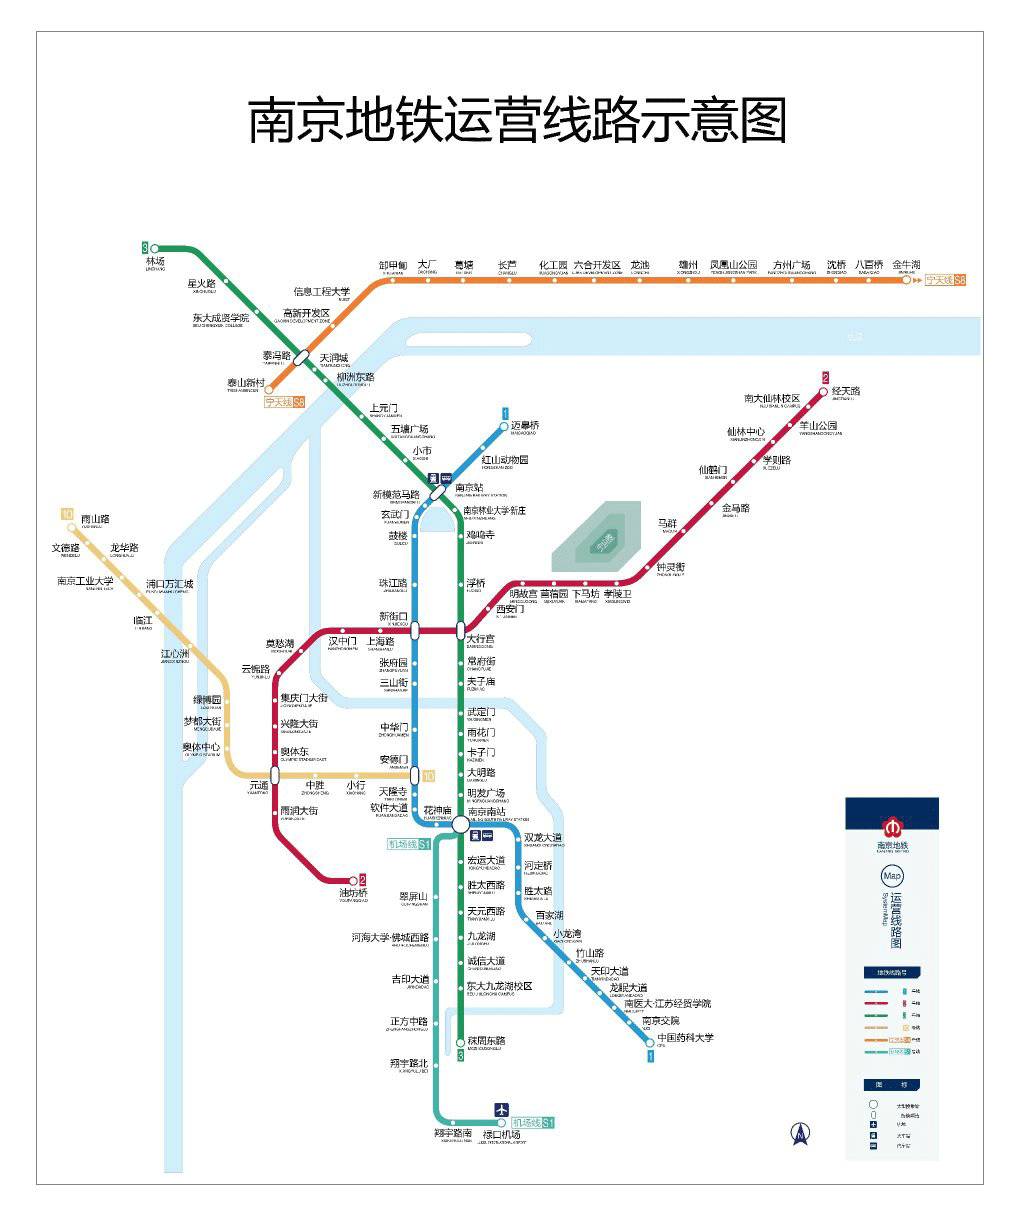 先来看看 南京地铁高清线路图 ▼ (点击查看大图)            最早最